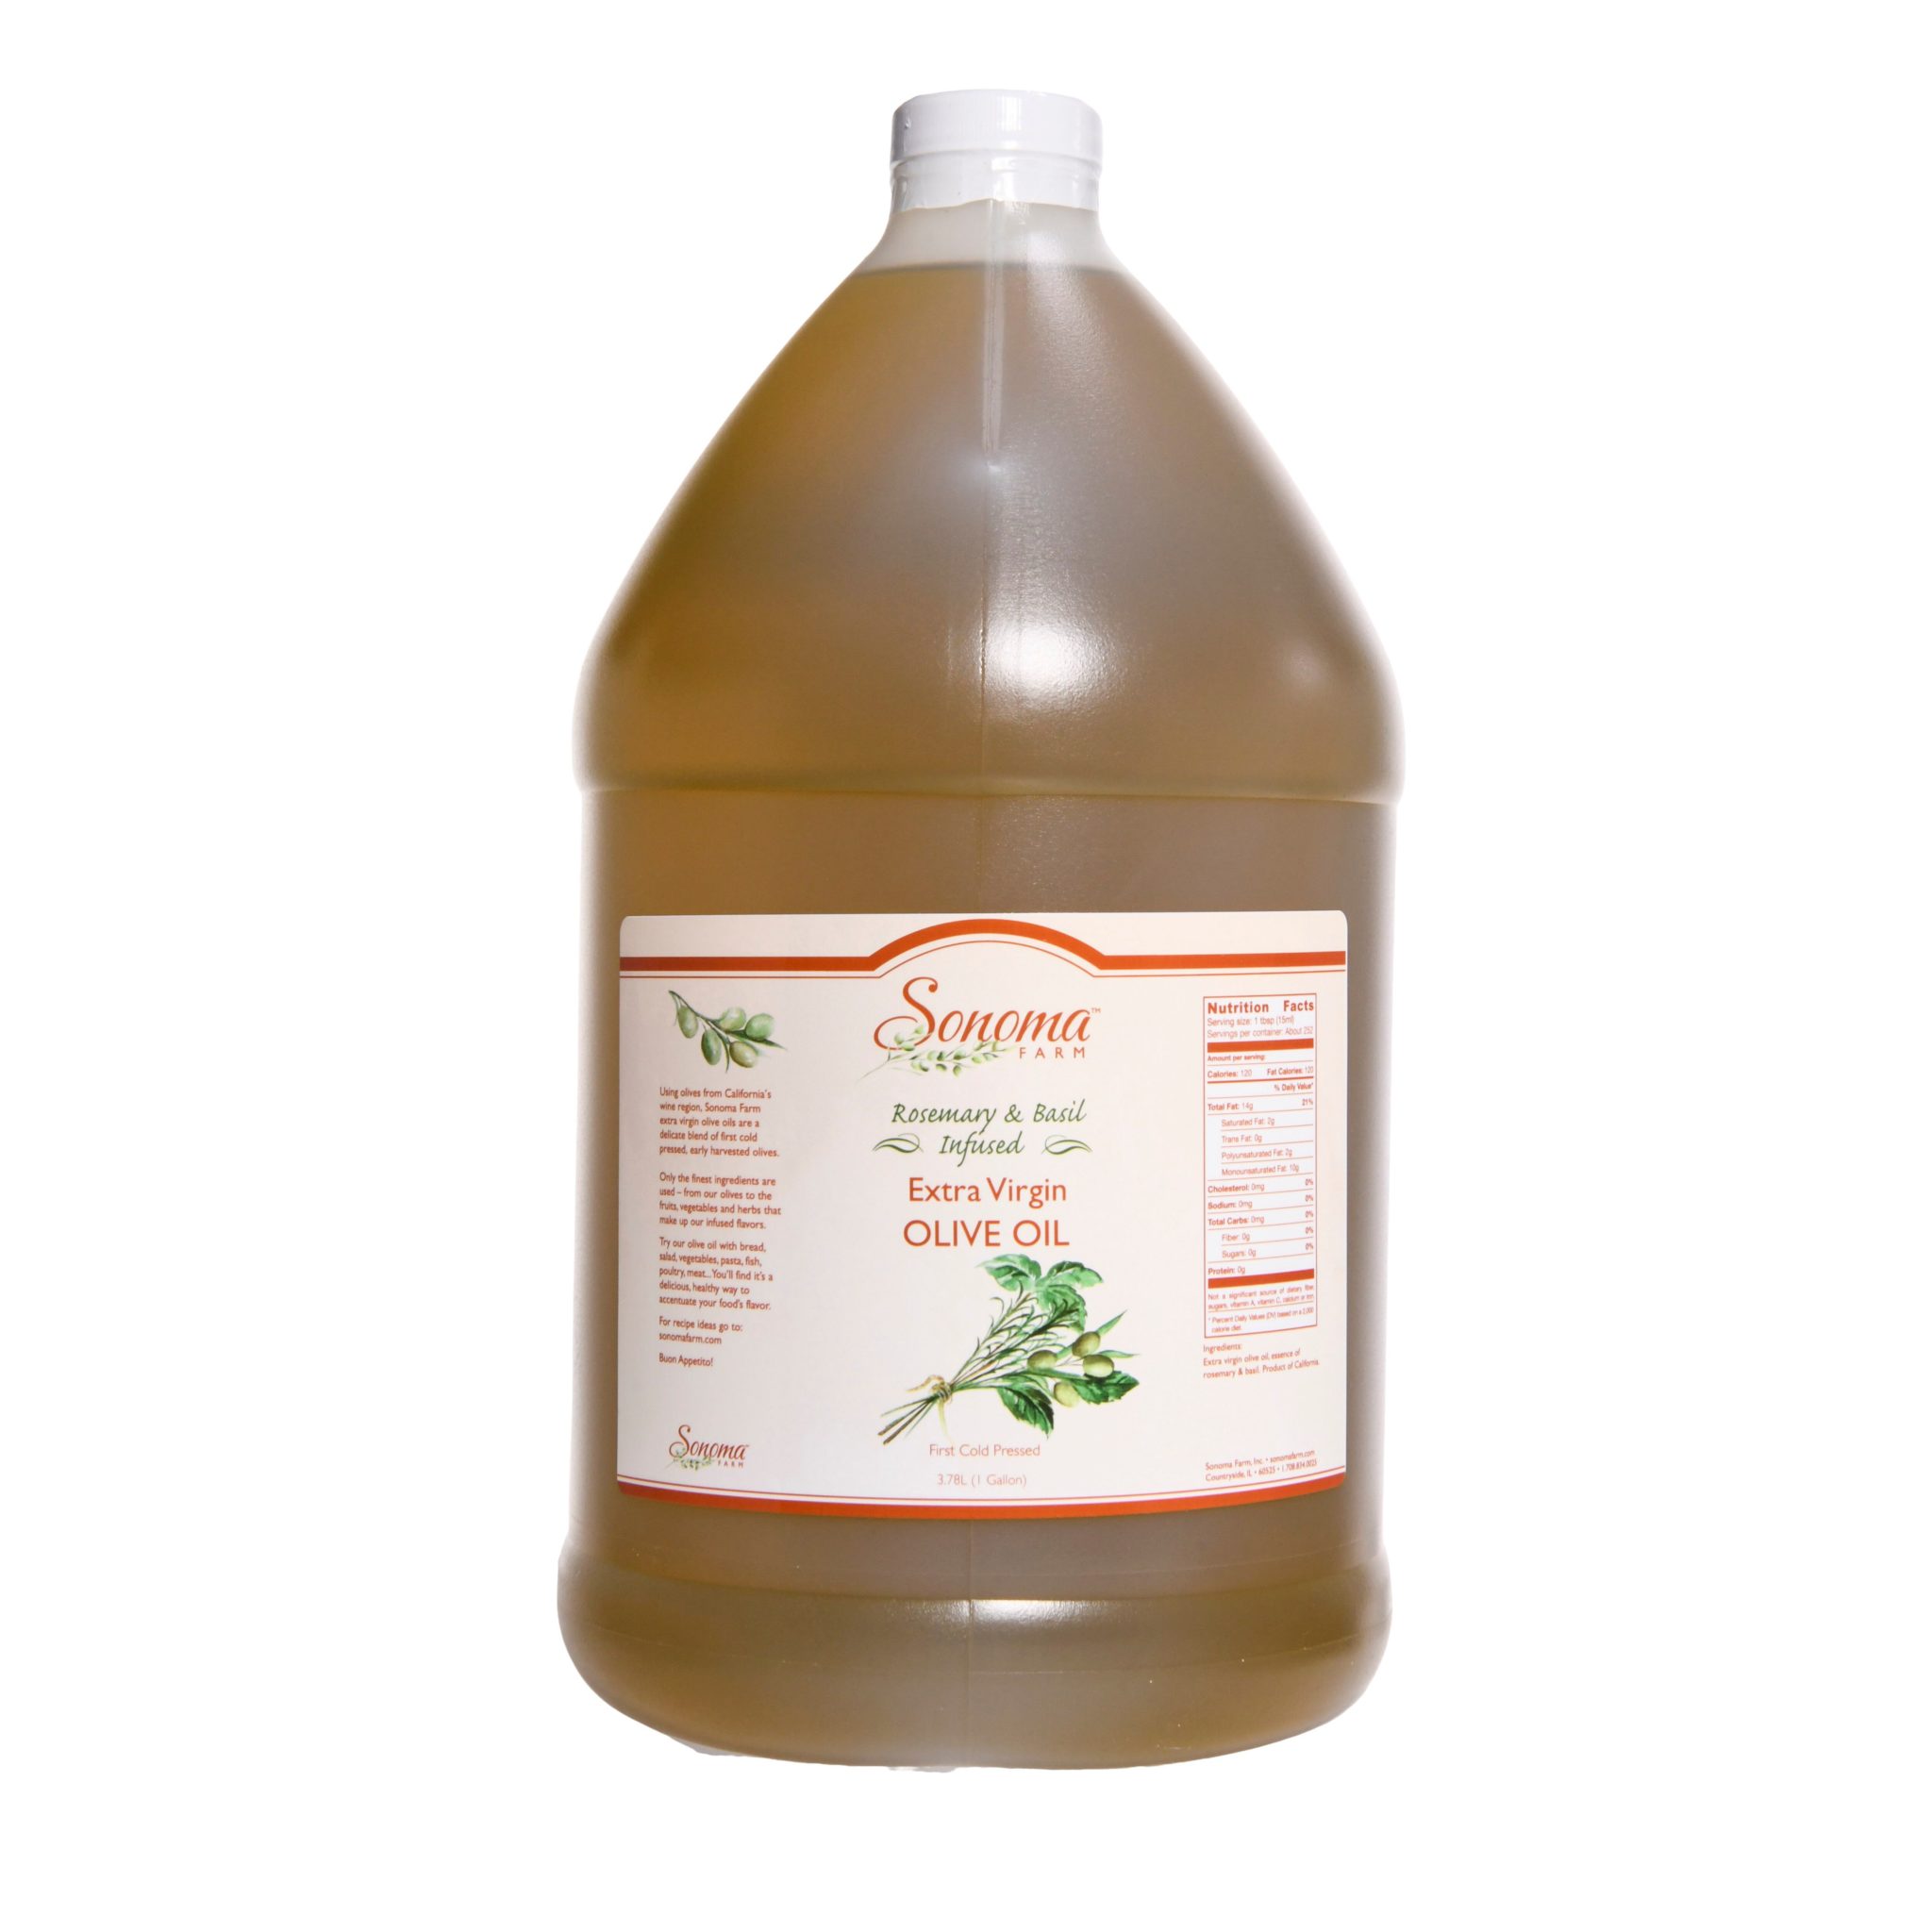 https://www.sonomafarm.com/product/rosemary-basil-infused-extra-virgin-olive-oil-bulk-1-gallon-3-8-liter/